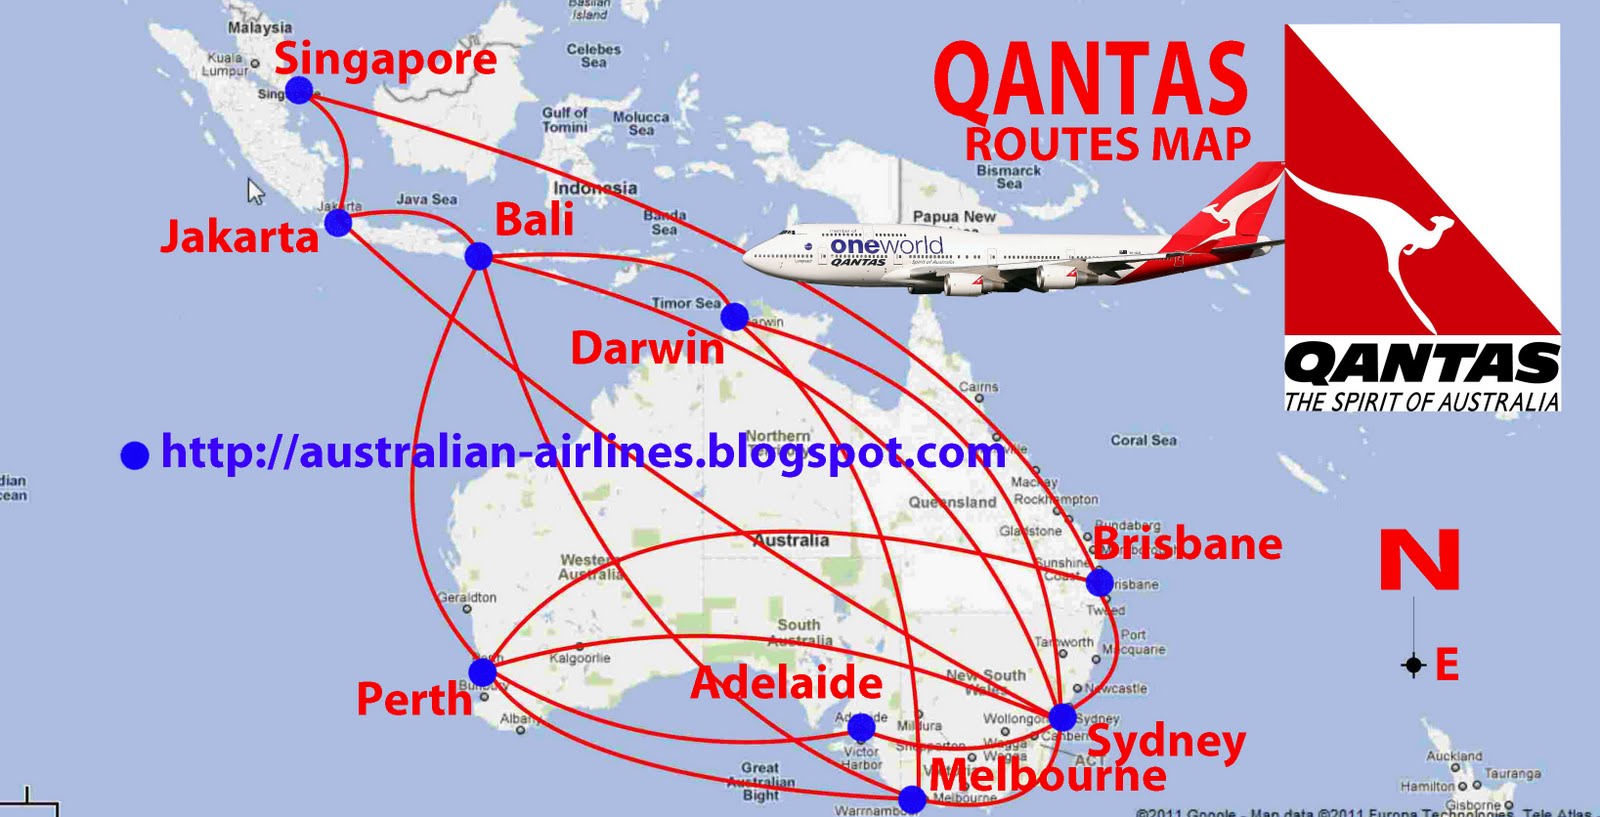 transportspot: Qantas in Indonesia